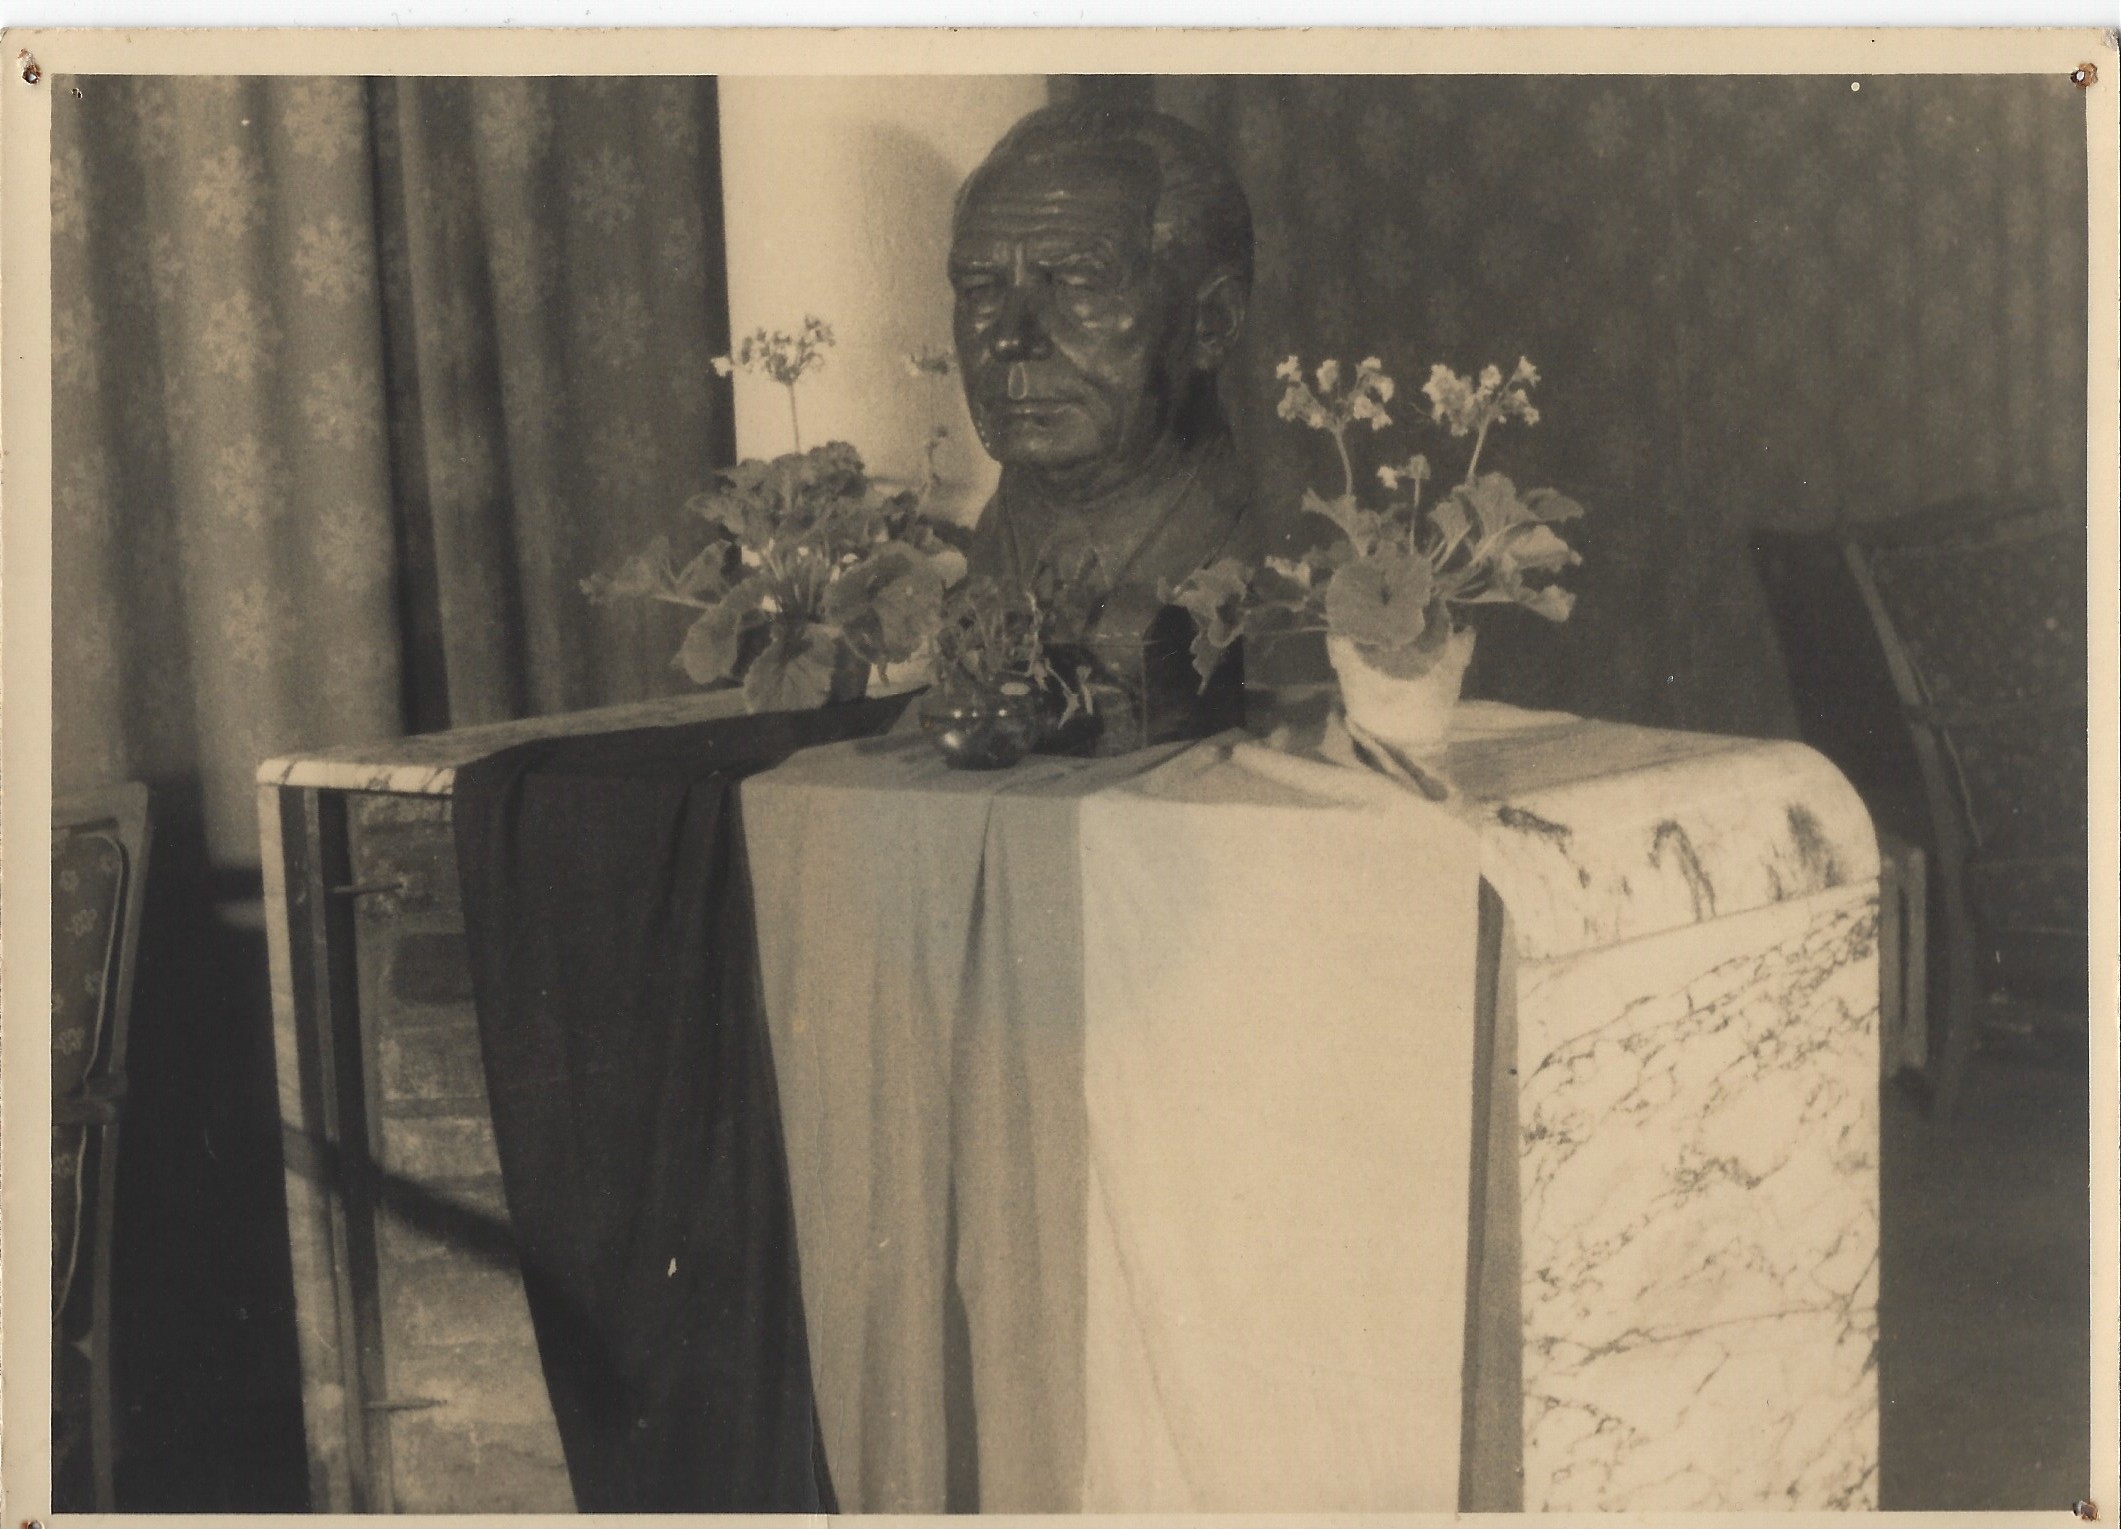 Fotografie: Büste von Wilhelm Pieck auf Kamin (Haus Schminke RR-F)